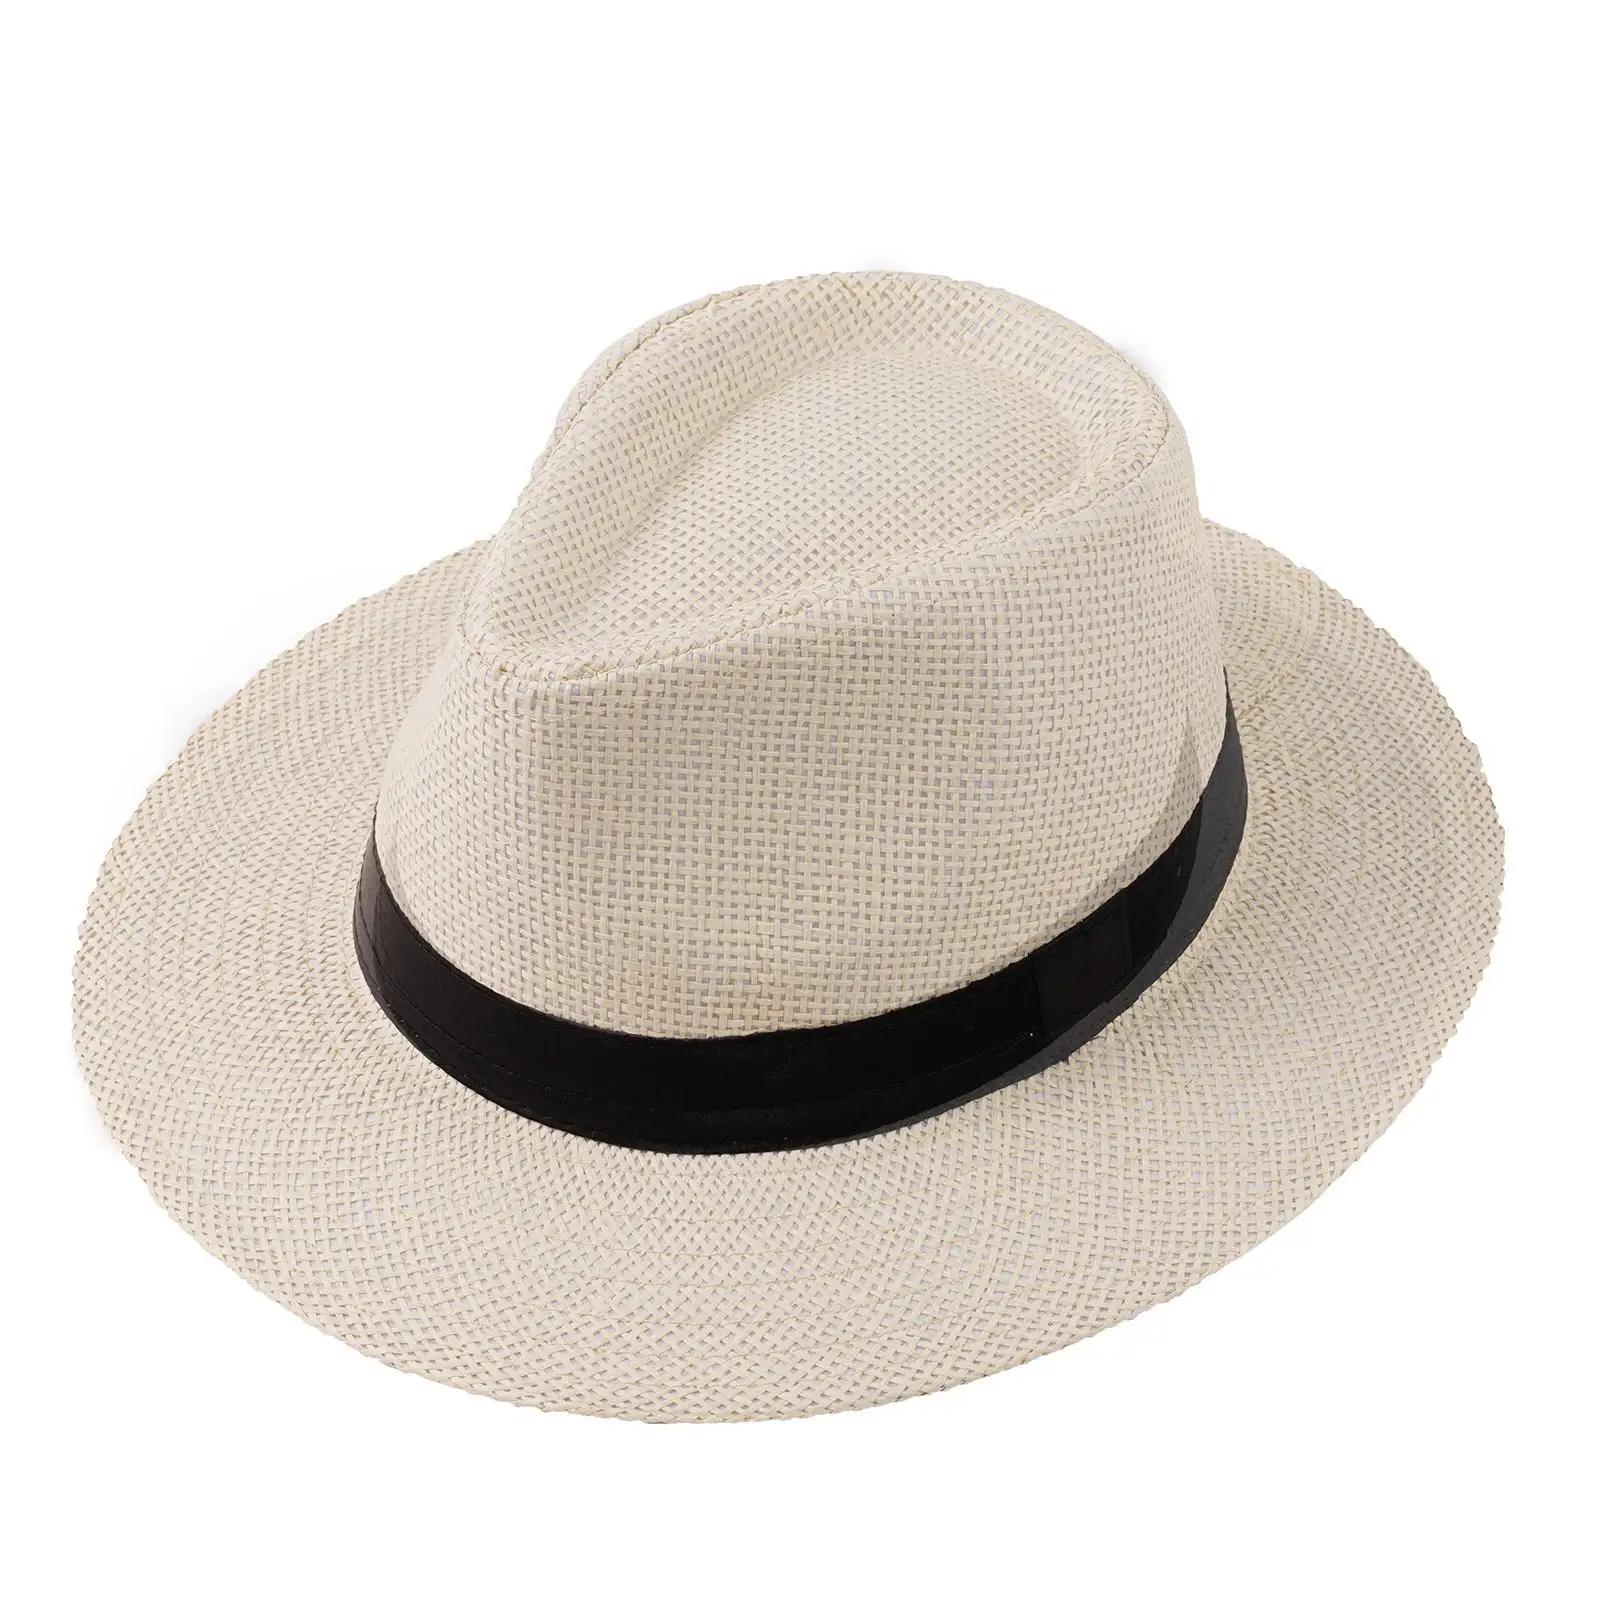 Panaman chapéu de palha para homens e mulheres, chapéu de palha dobrável com fita, estilo cowboy casual, jazz